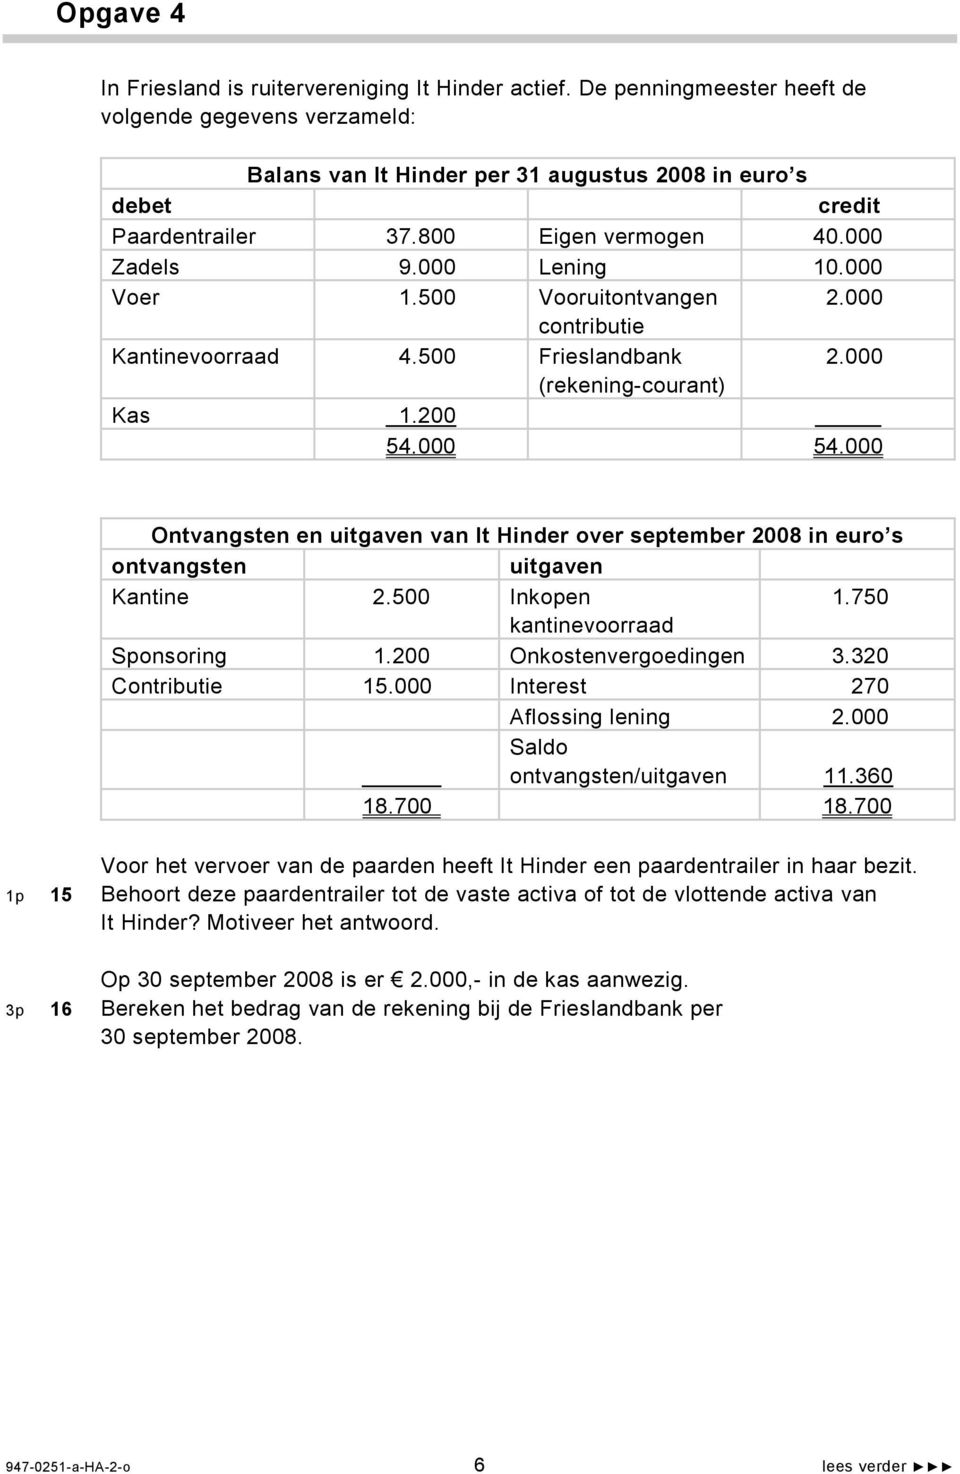 000 Ontvangsten en uitgaven van It Hinder over september 2008 in euro s ontvangsten uitgaven Kantine 2.500 Inkopen 1.750 kantinevoorraad Sponsoring 1.200 Onkostenvergoedingen 3.320 Contributie 15.